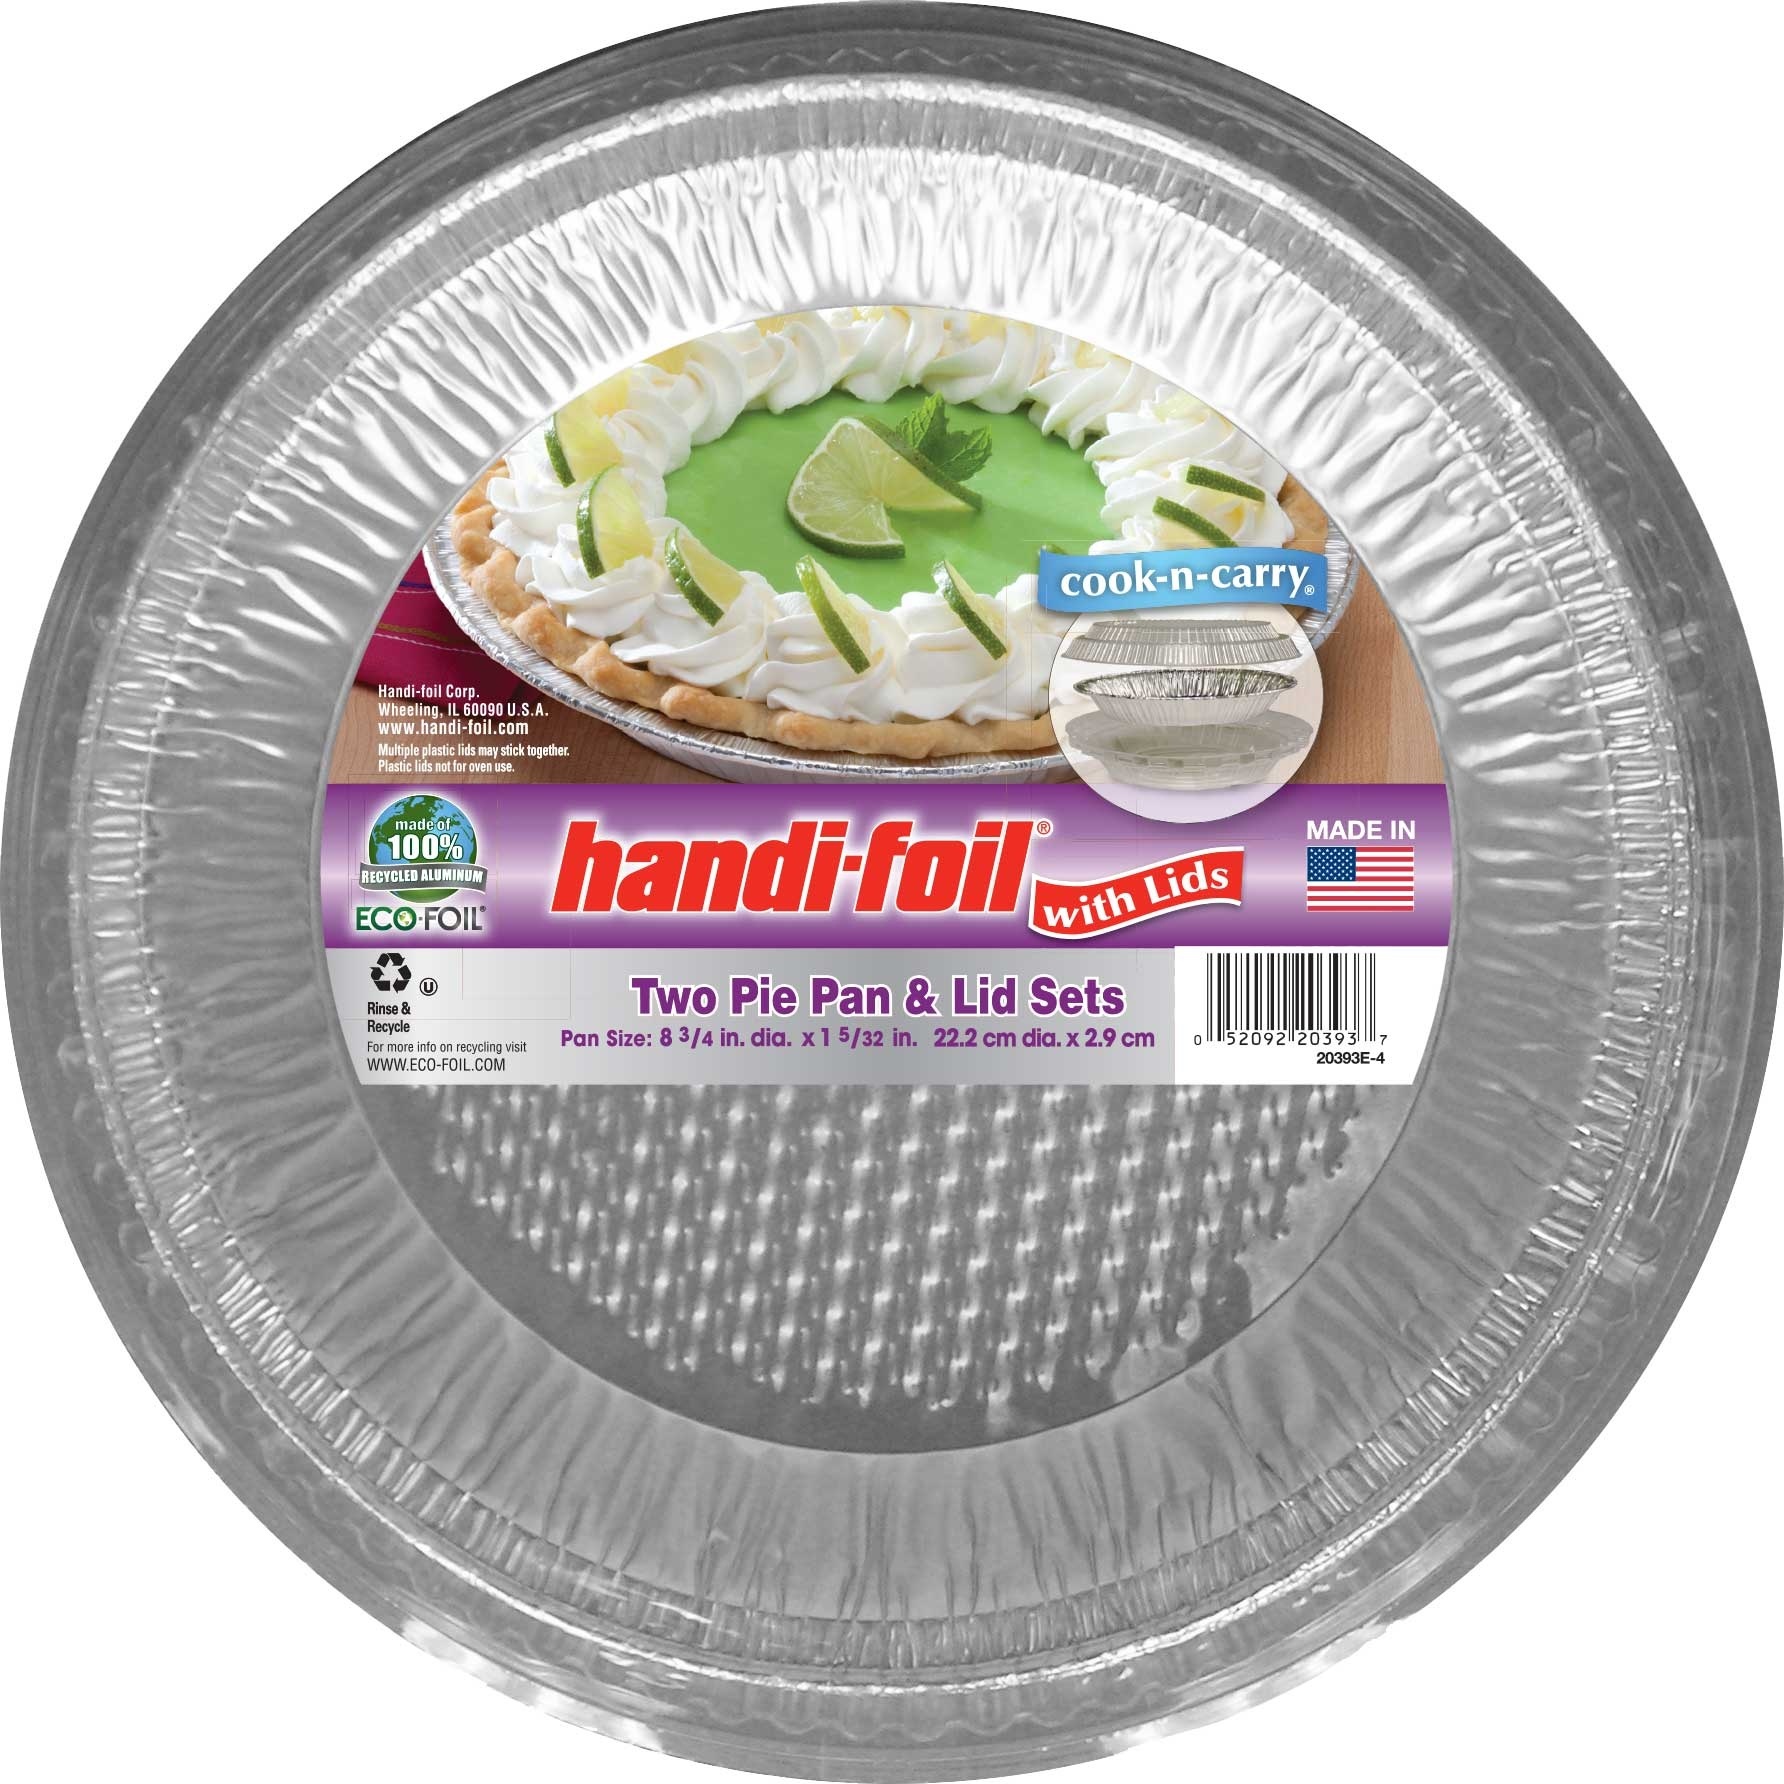 slide 1 of 2, Handi-foil Eco Foil Pie Pan Lid Sets, 2 ct